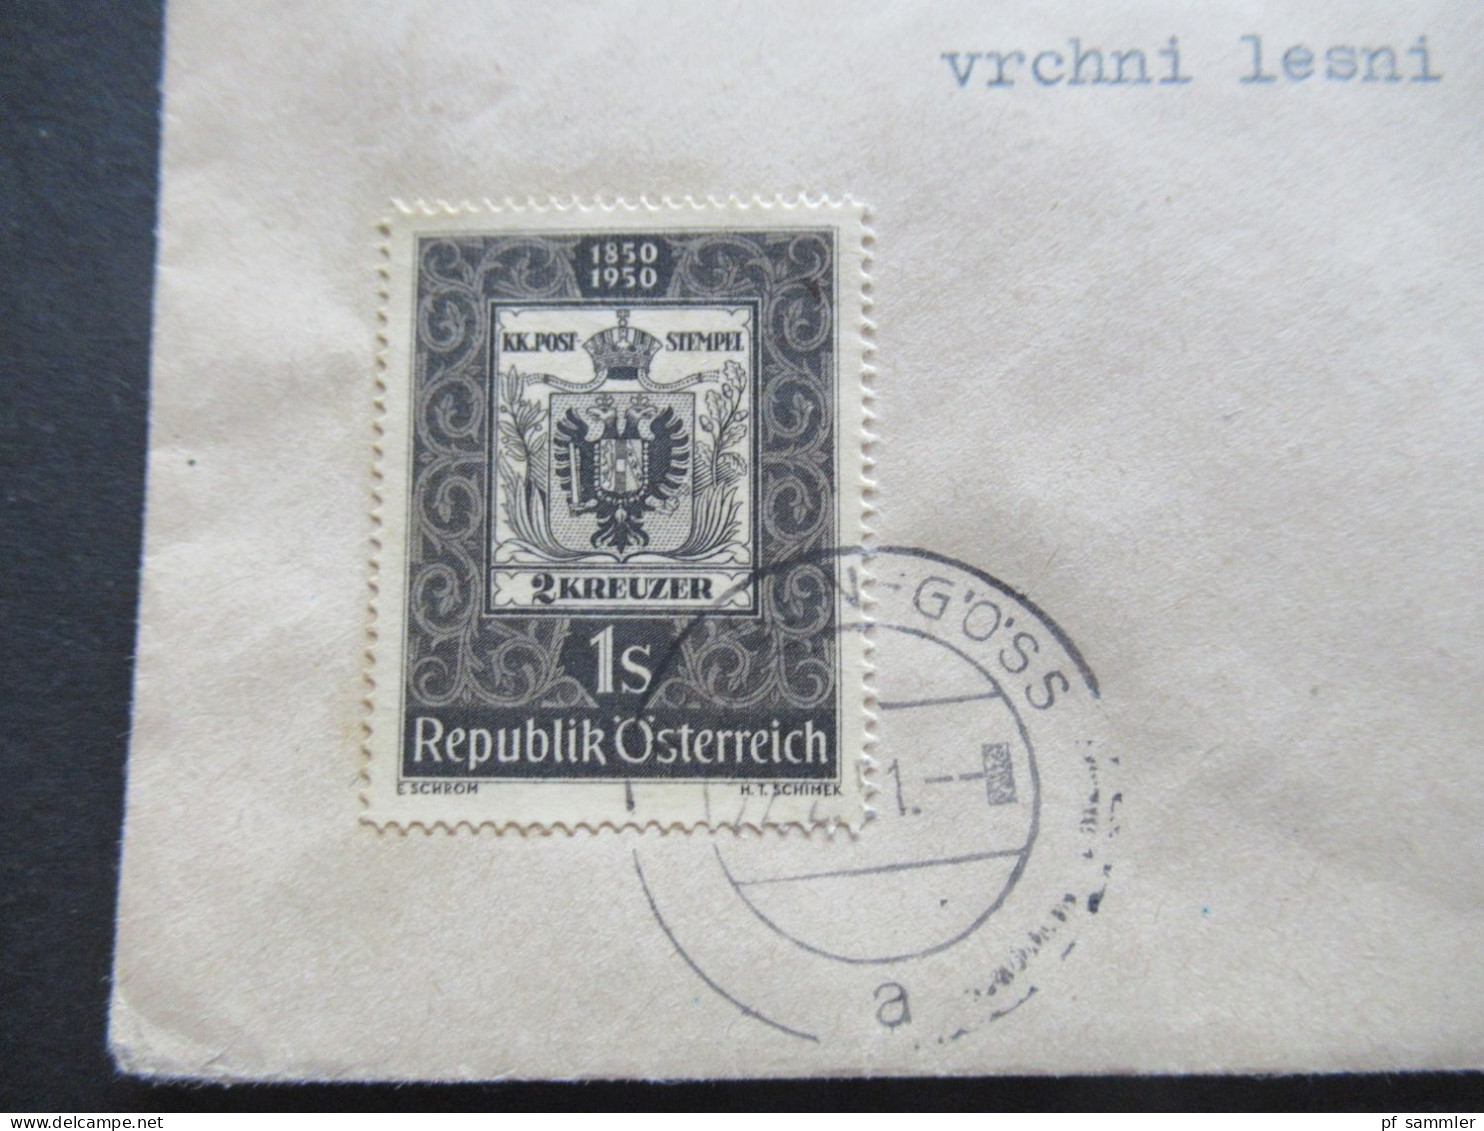 Österreich 1950 / 1951 Michel Nr.958 Und Nr.950 MiF Leoben Göss In Die CSR Gesendet - Covers & Documents